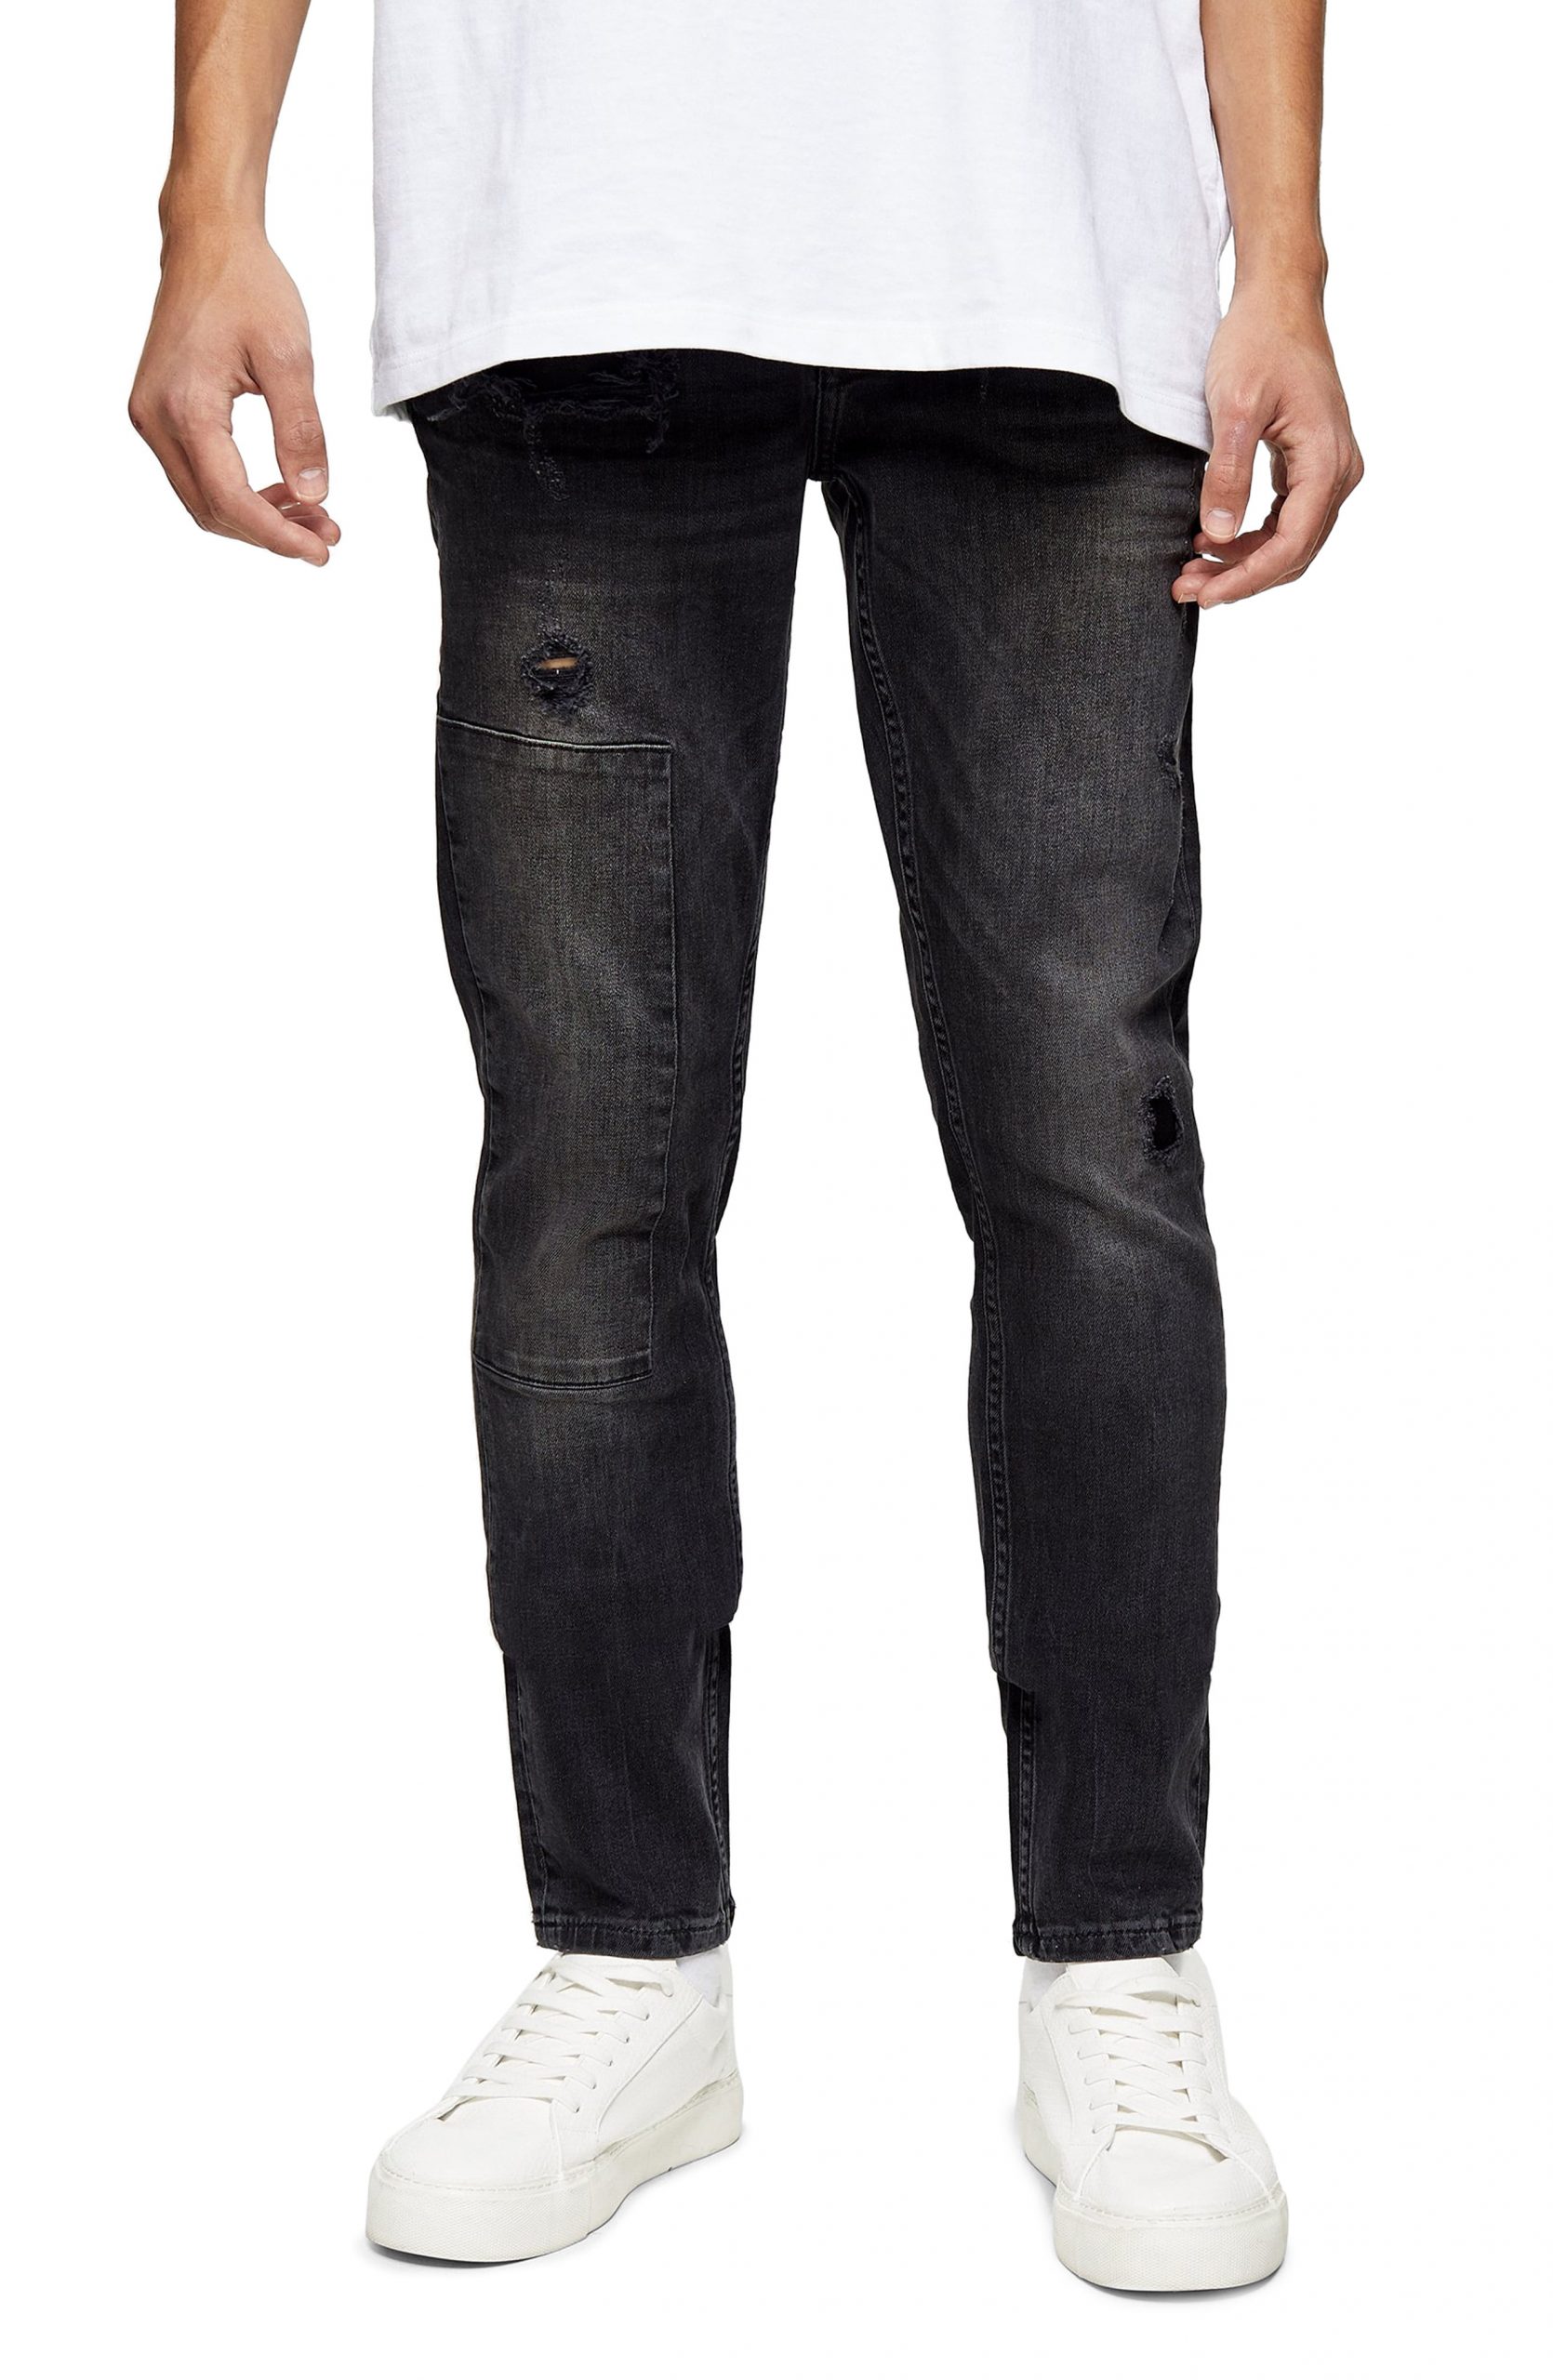 Men’s Topman Rip & Repair Skinny Fit Jeans, Size 34 x 34 - Black | The ...